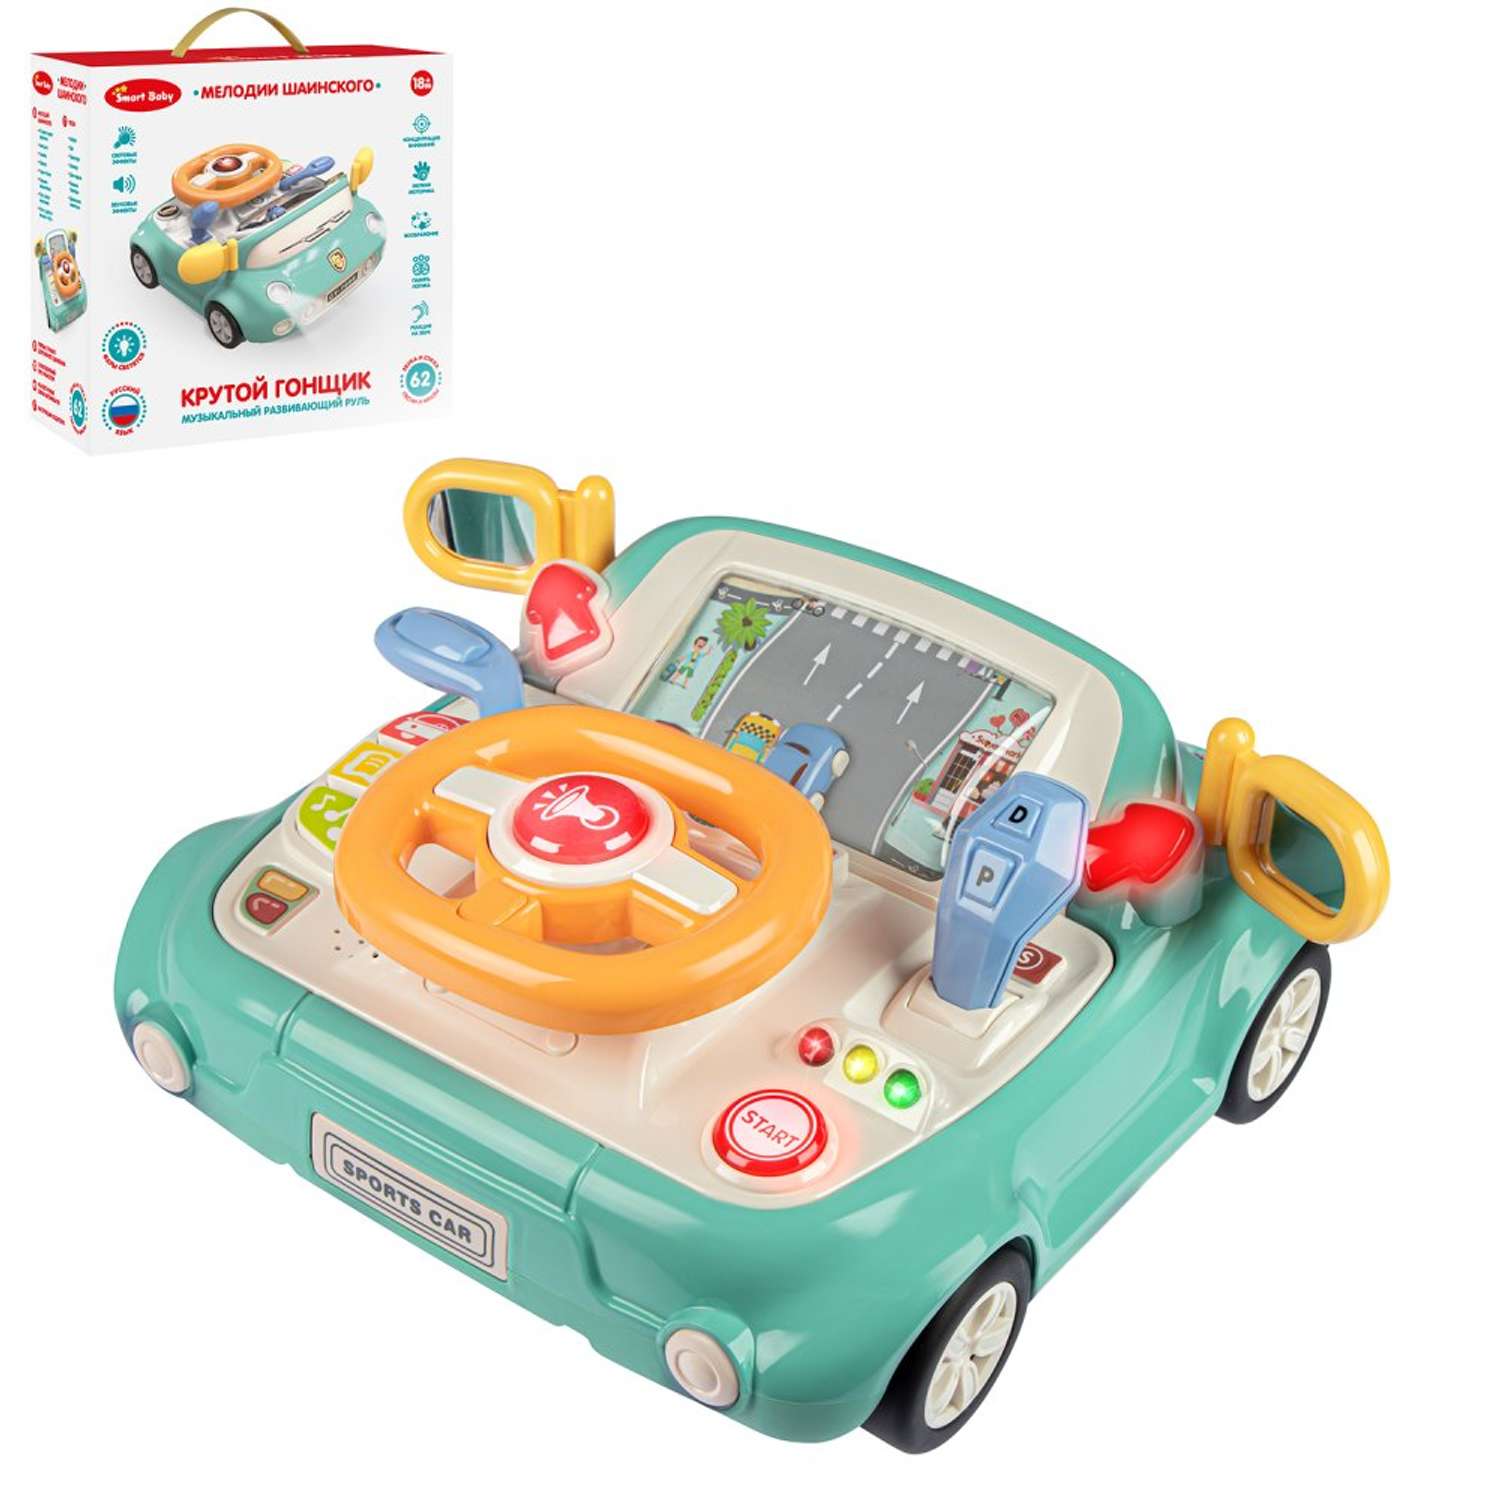 Развивающая игрушка Smart Baby Игровой обучающий центр музыкальный JB0334085 - фото 9